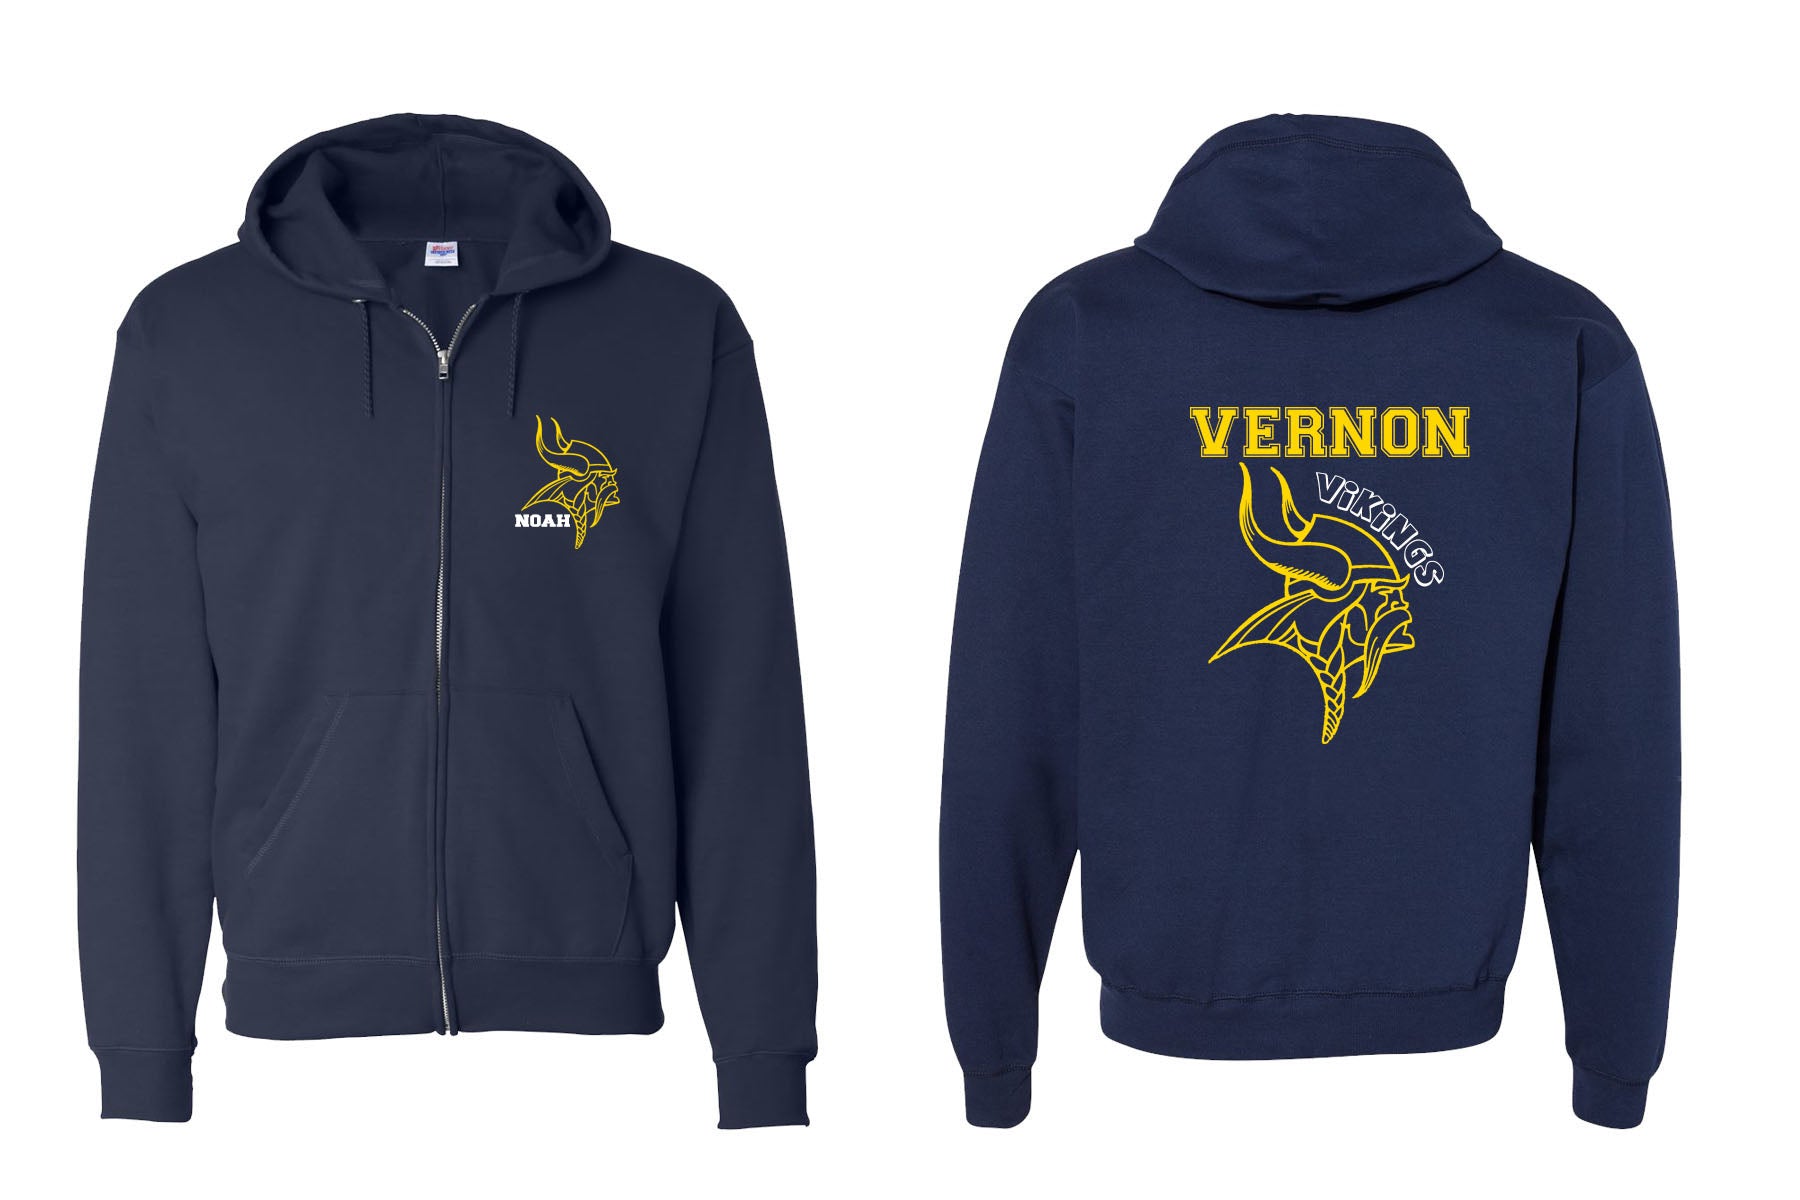 Vernon design 6 Zip up Sweatshirt